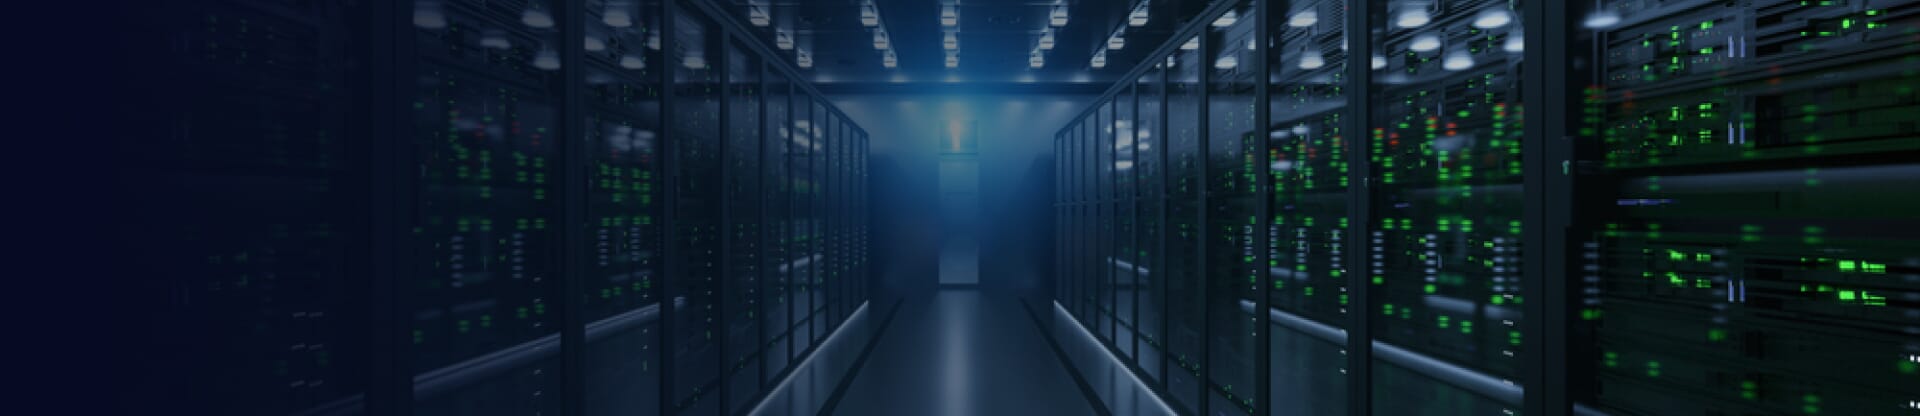 Server storage system